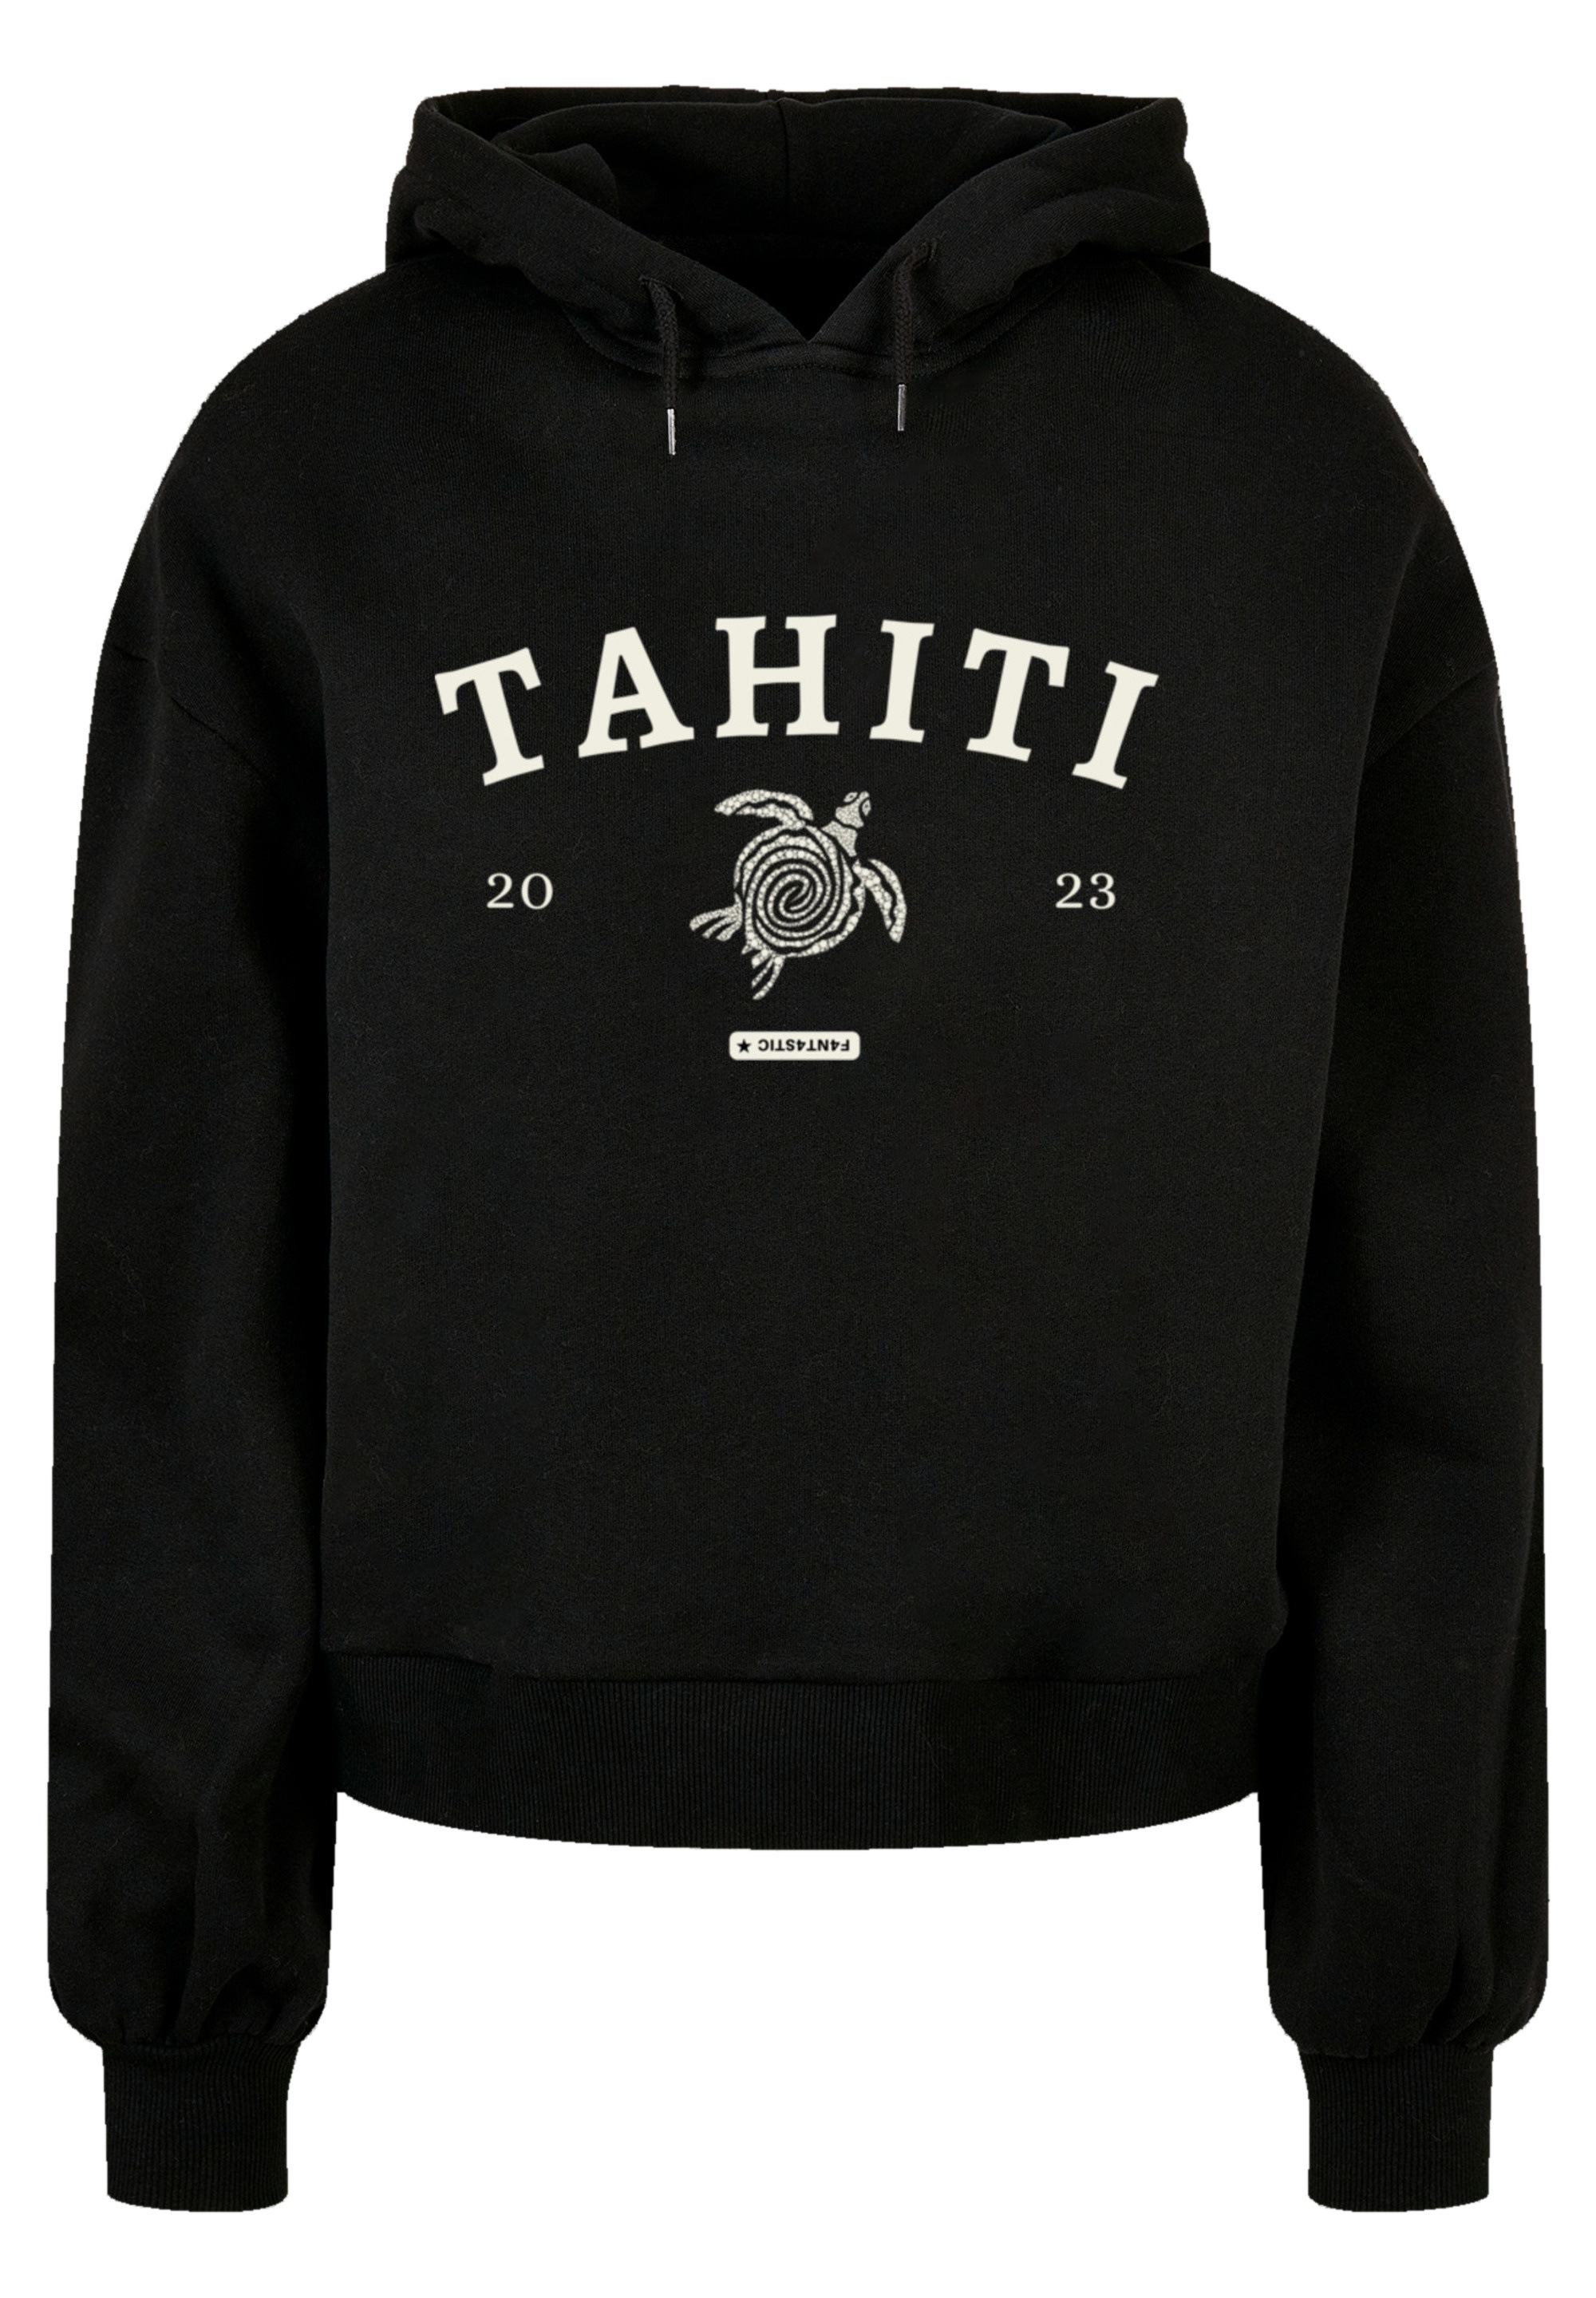 Print T-Shirt bestellen »Tahiti«, walking F4NT4STIC I\'m |